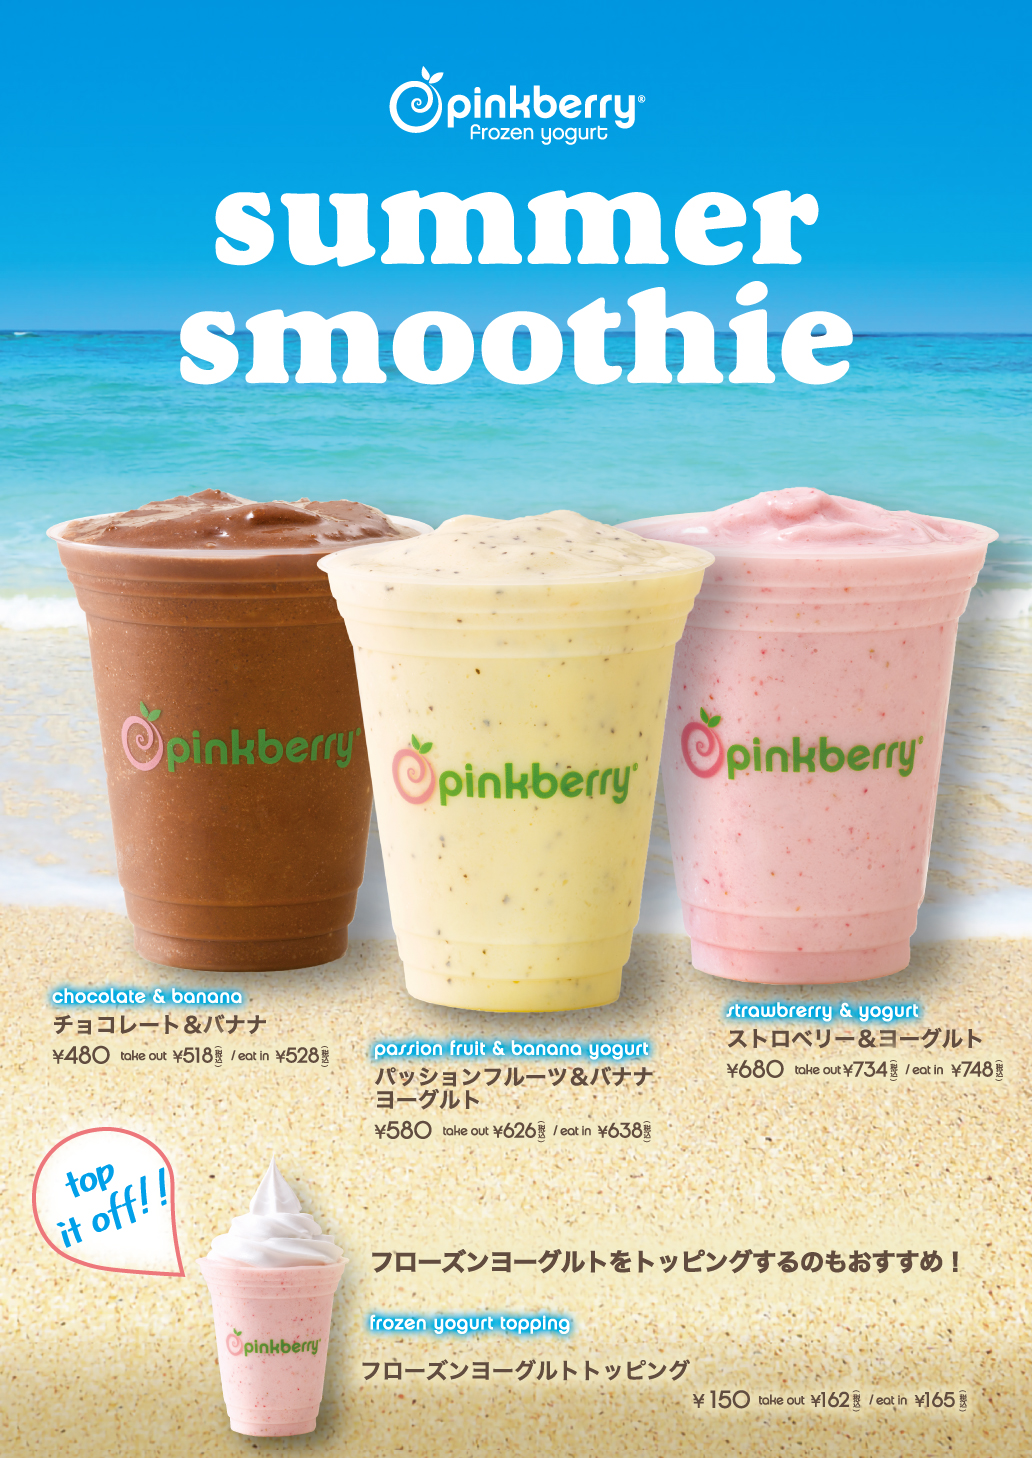 フローズンヨーグルトショップ『ピンクベリー』フルーツを使ったスイーツドリンク「summer smoothie」3種類、夏季限定販売中のサブ画像1